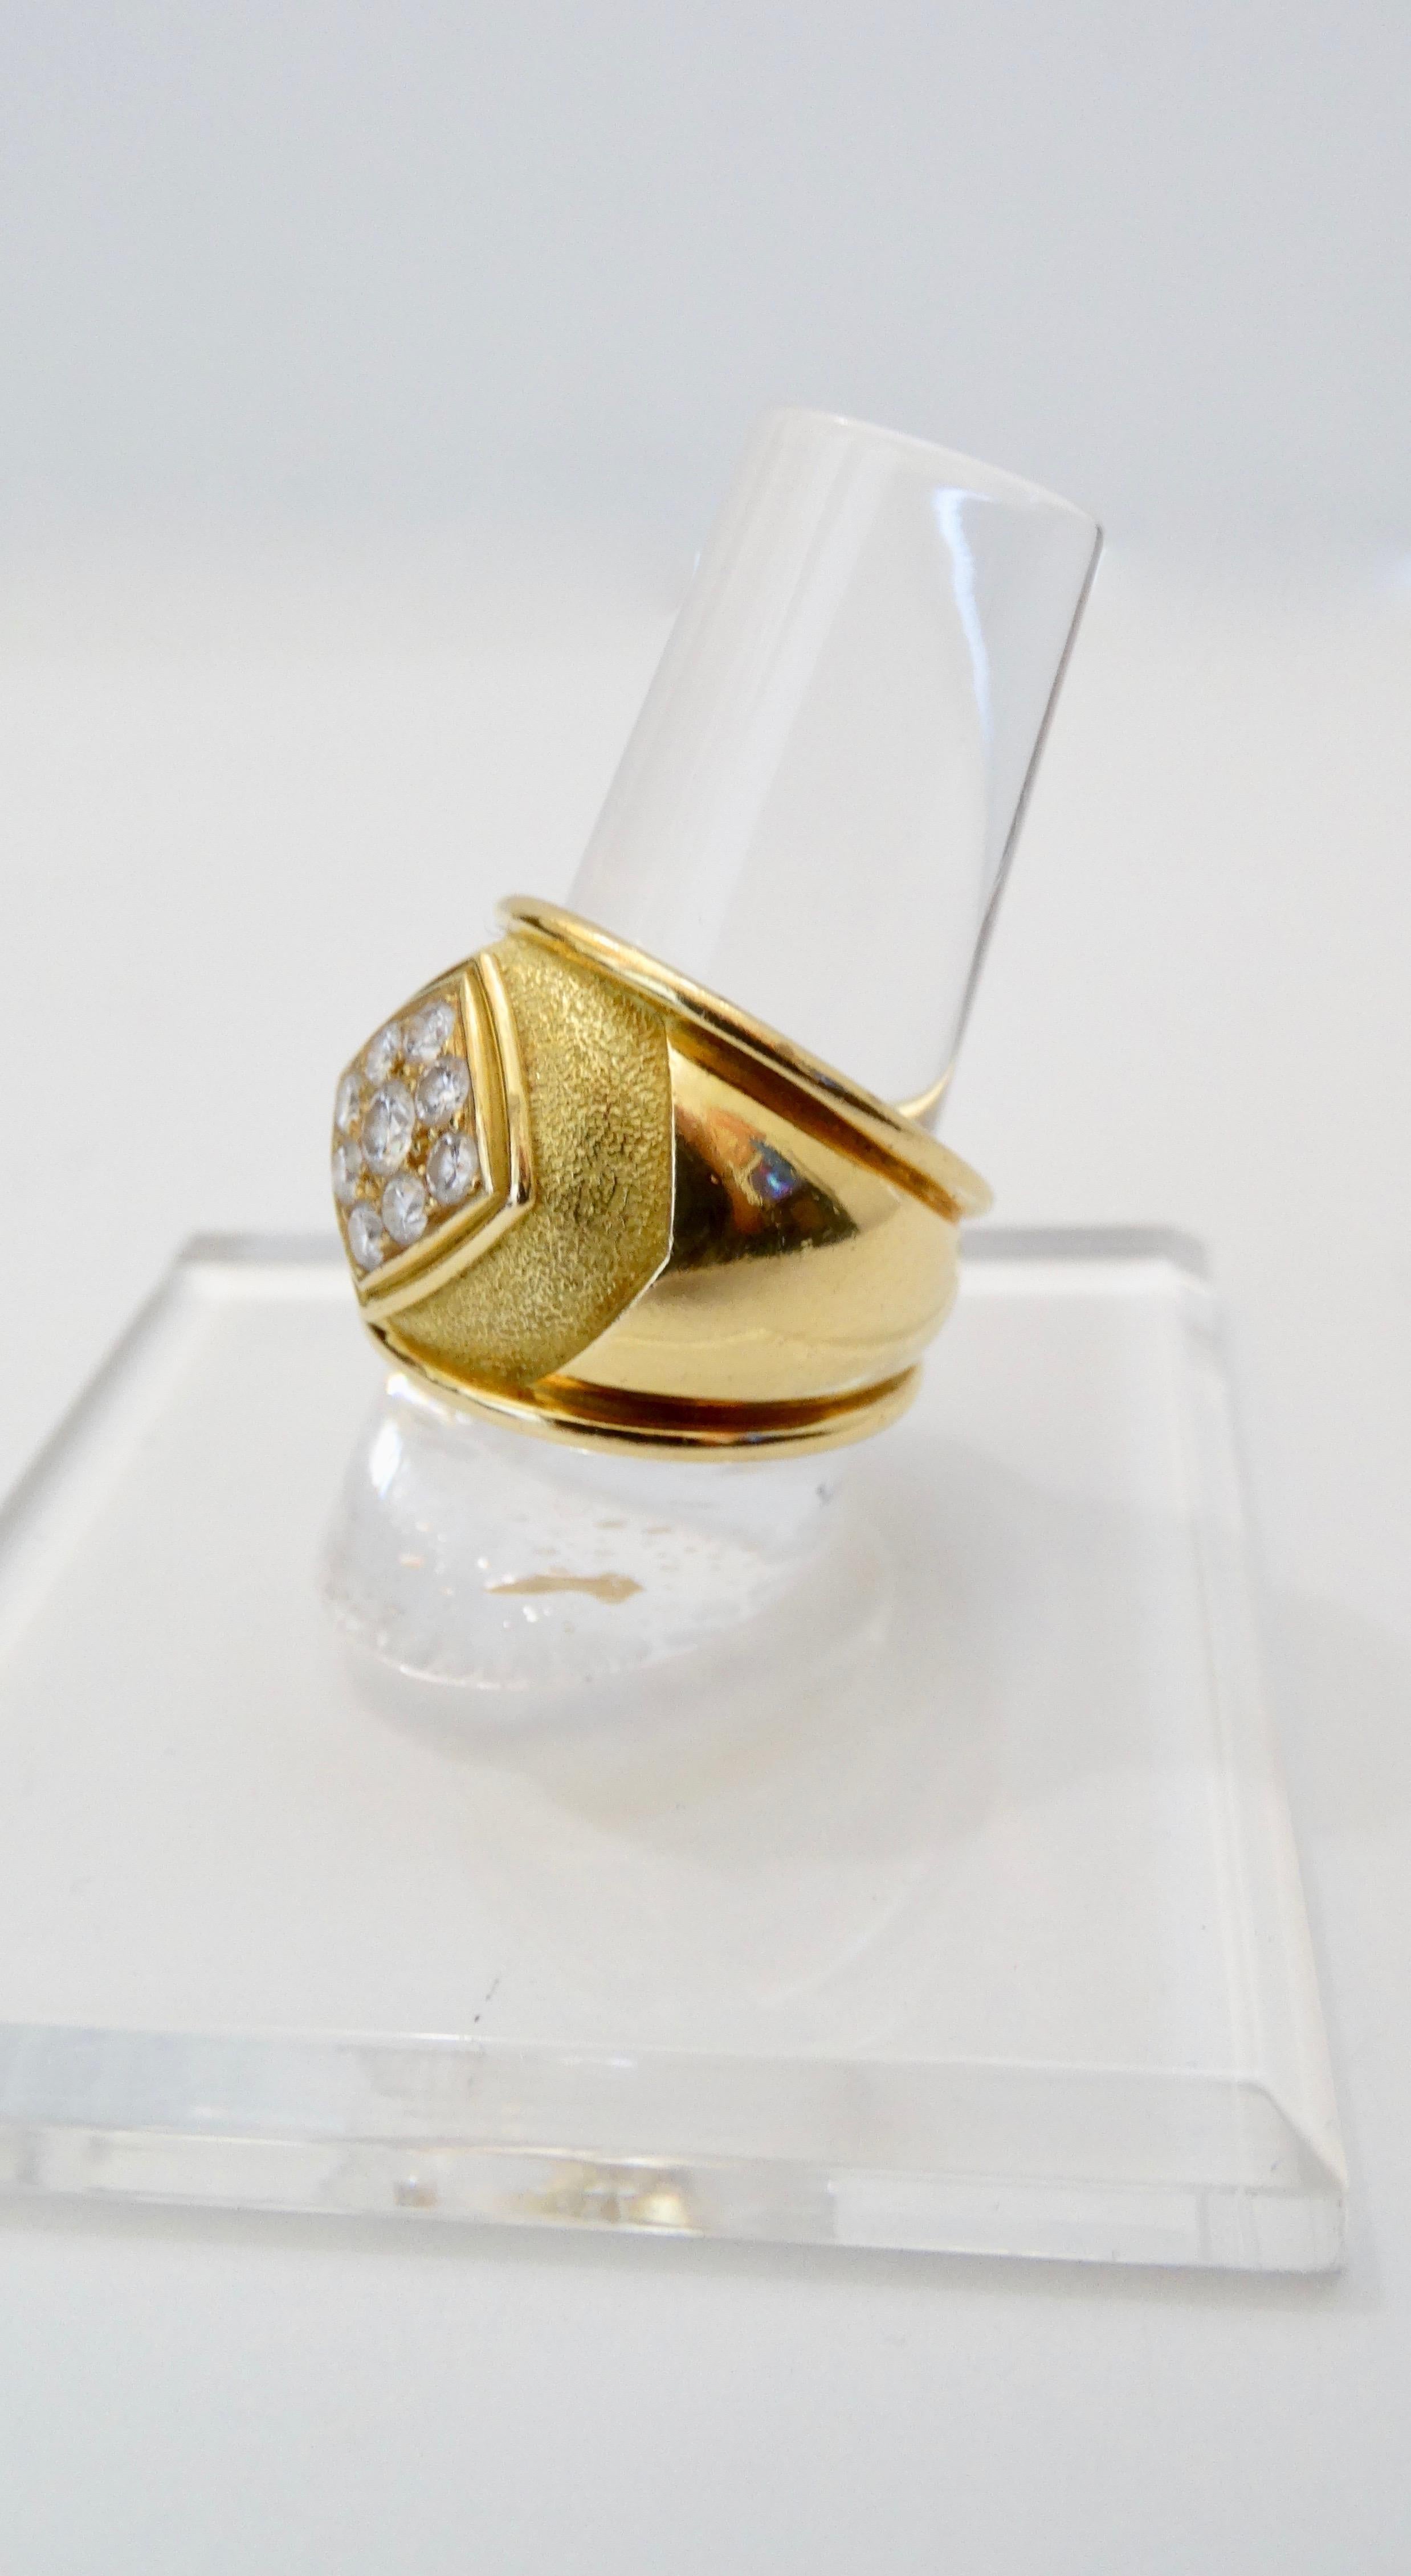 Amazing Leo de Vroomen 18k Gold ring circa 1980s. Il s'agit d'un anneau épais en or lisse et texturé et d'un centre de diamants en relief qui comprend une grappe de diamants de 0,33 carat. Le poids total en grammes est de 16,3 et c'est une taille 7.